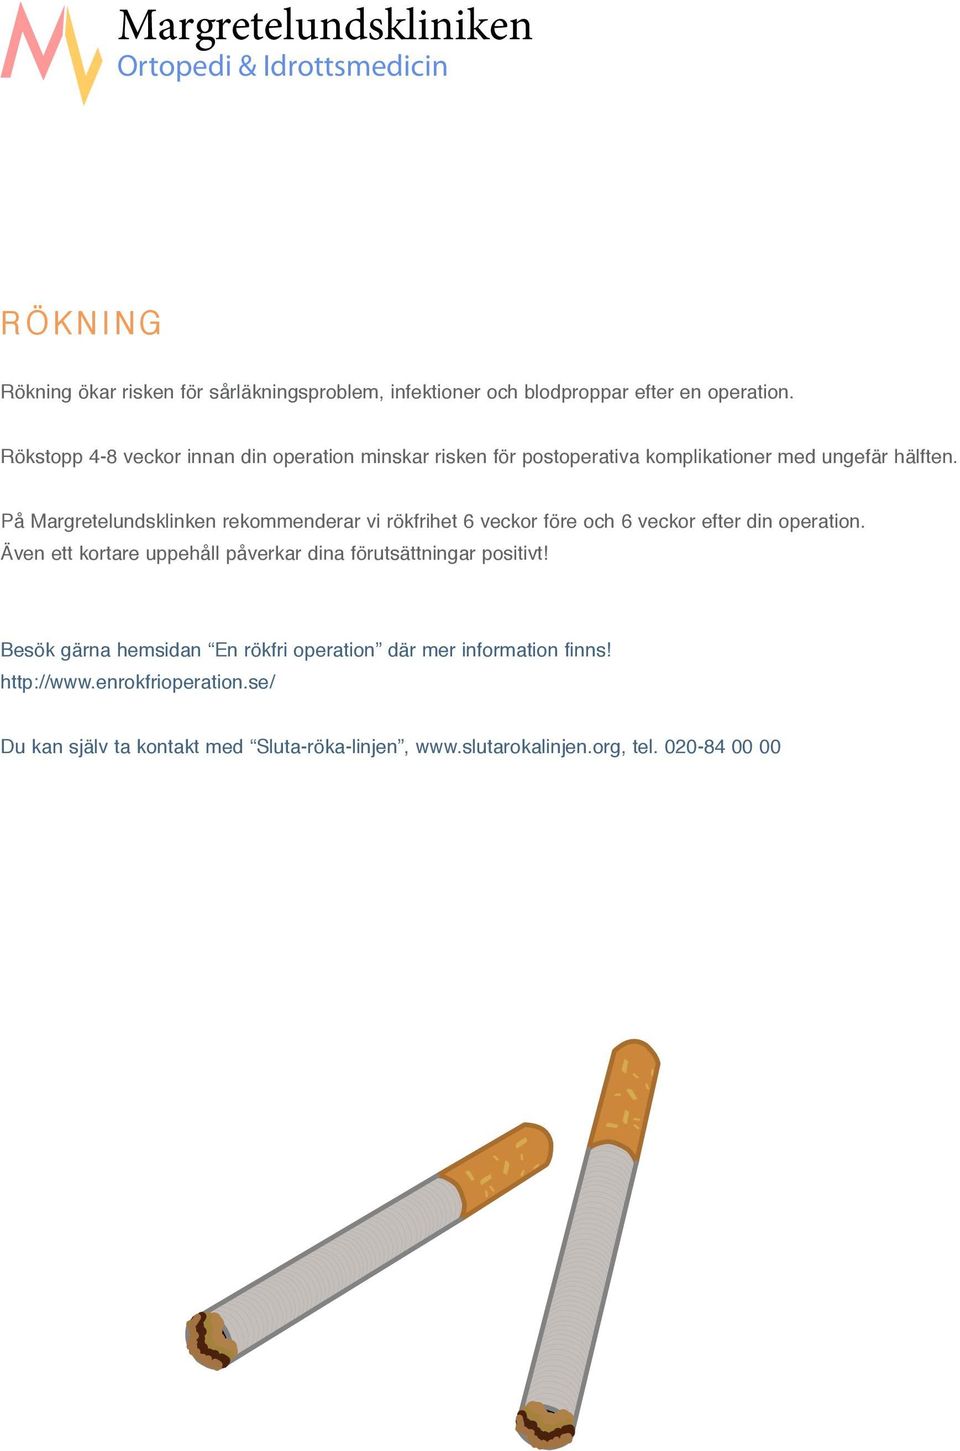 På Margretelundsklinken rekommenderar vi rökfrihet 6 veckor före och 6 veckor efter din operation.